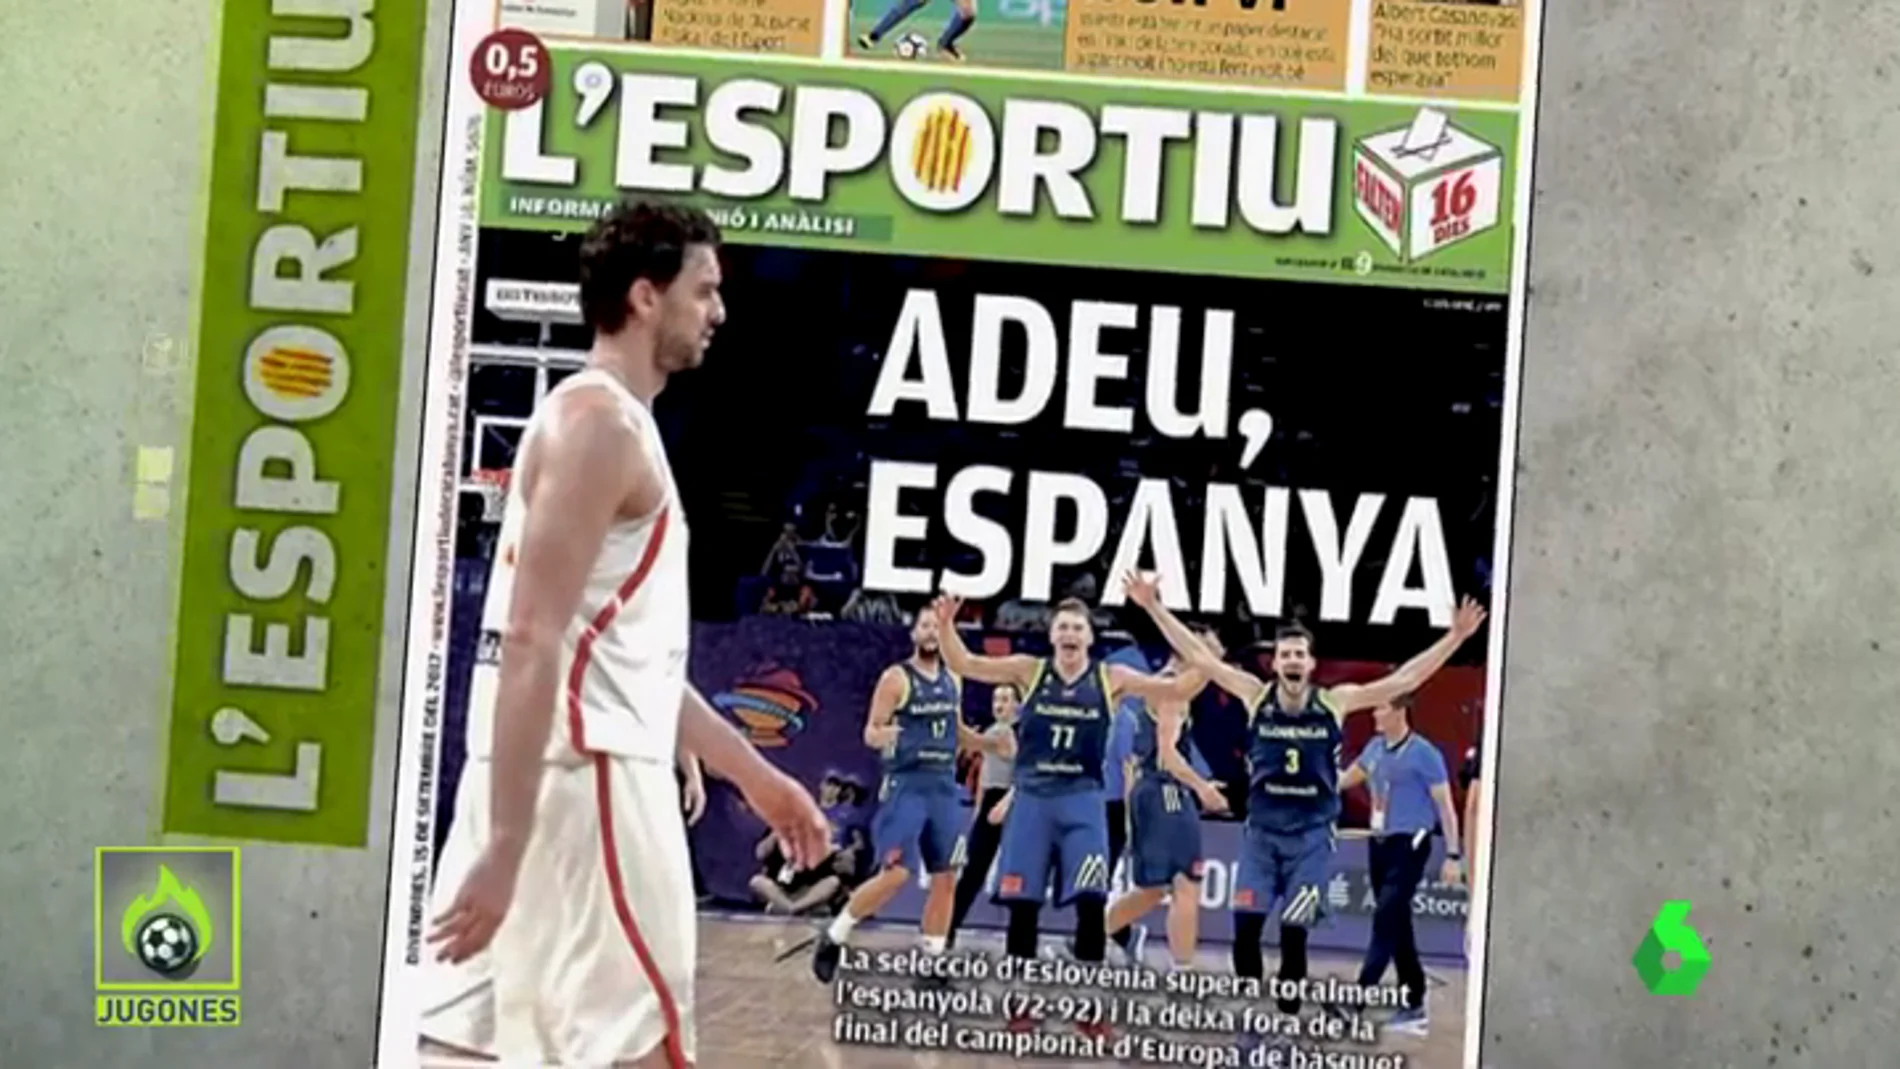 La polémica portada de L'Esportiu: 'Adeu Espanya'